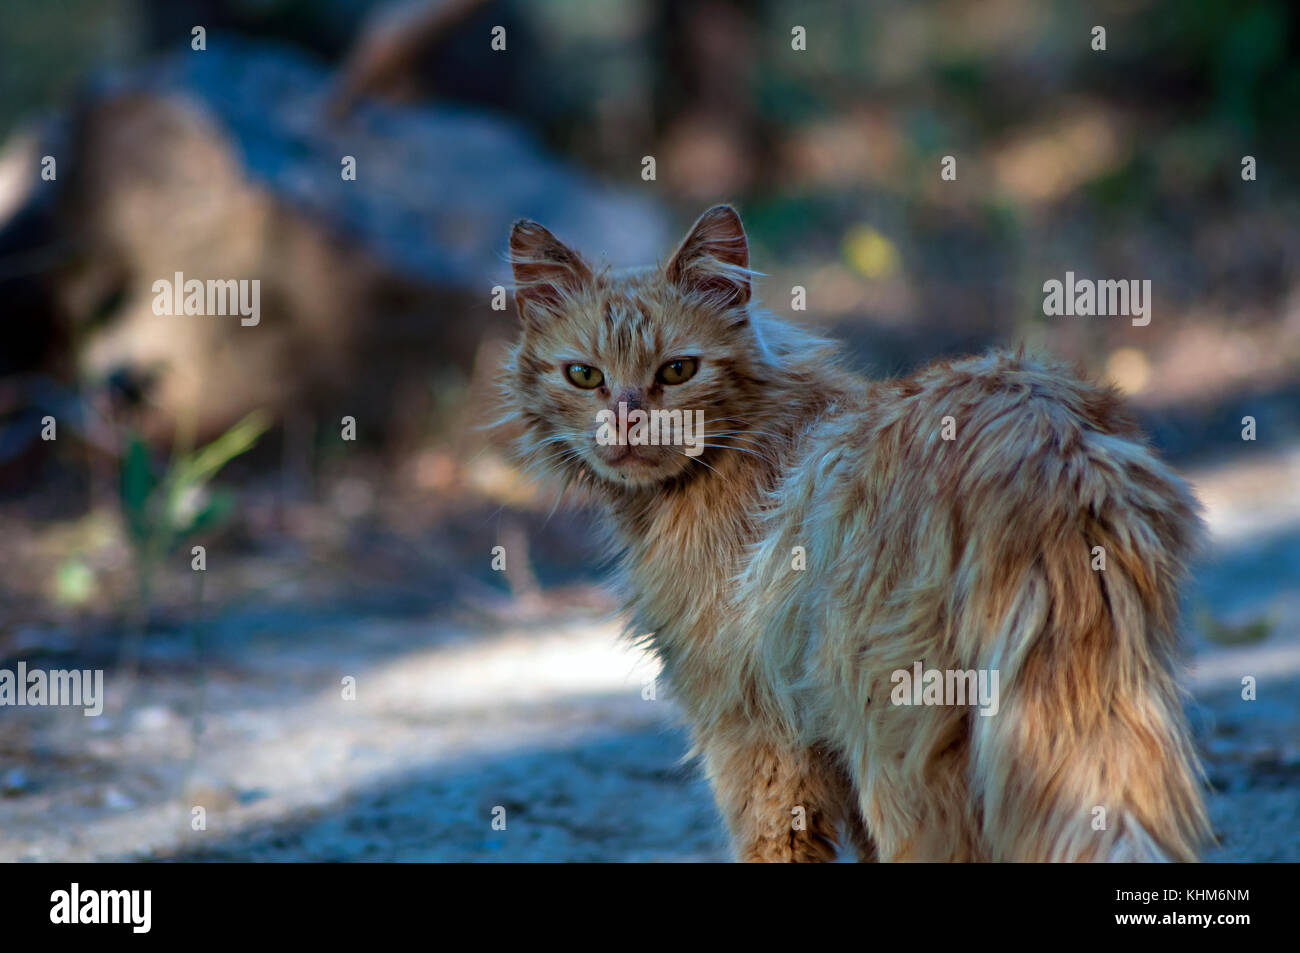 lofty and frumpish cat Stock Photo